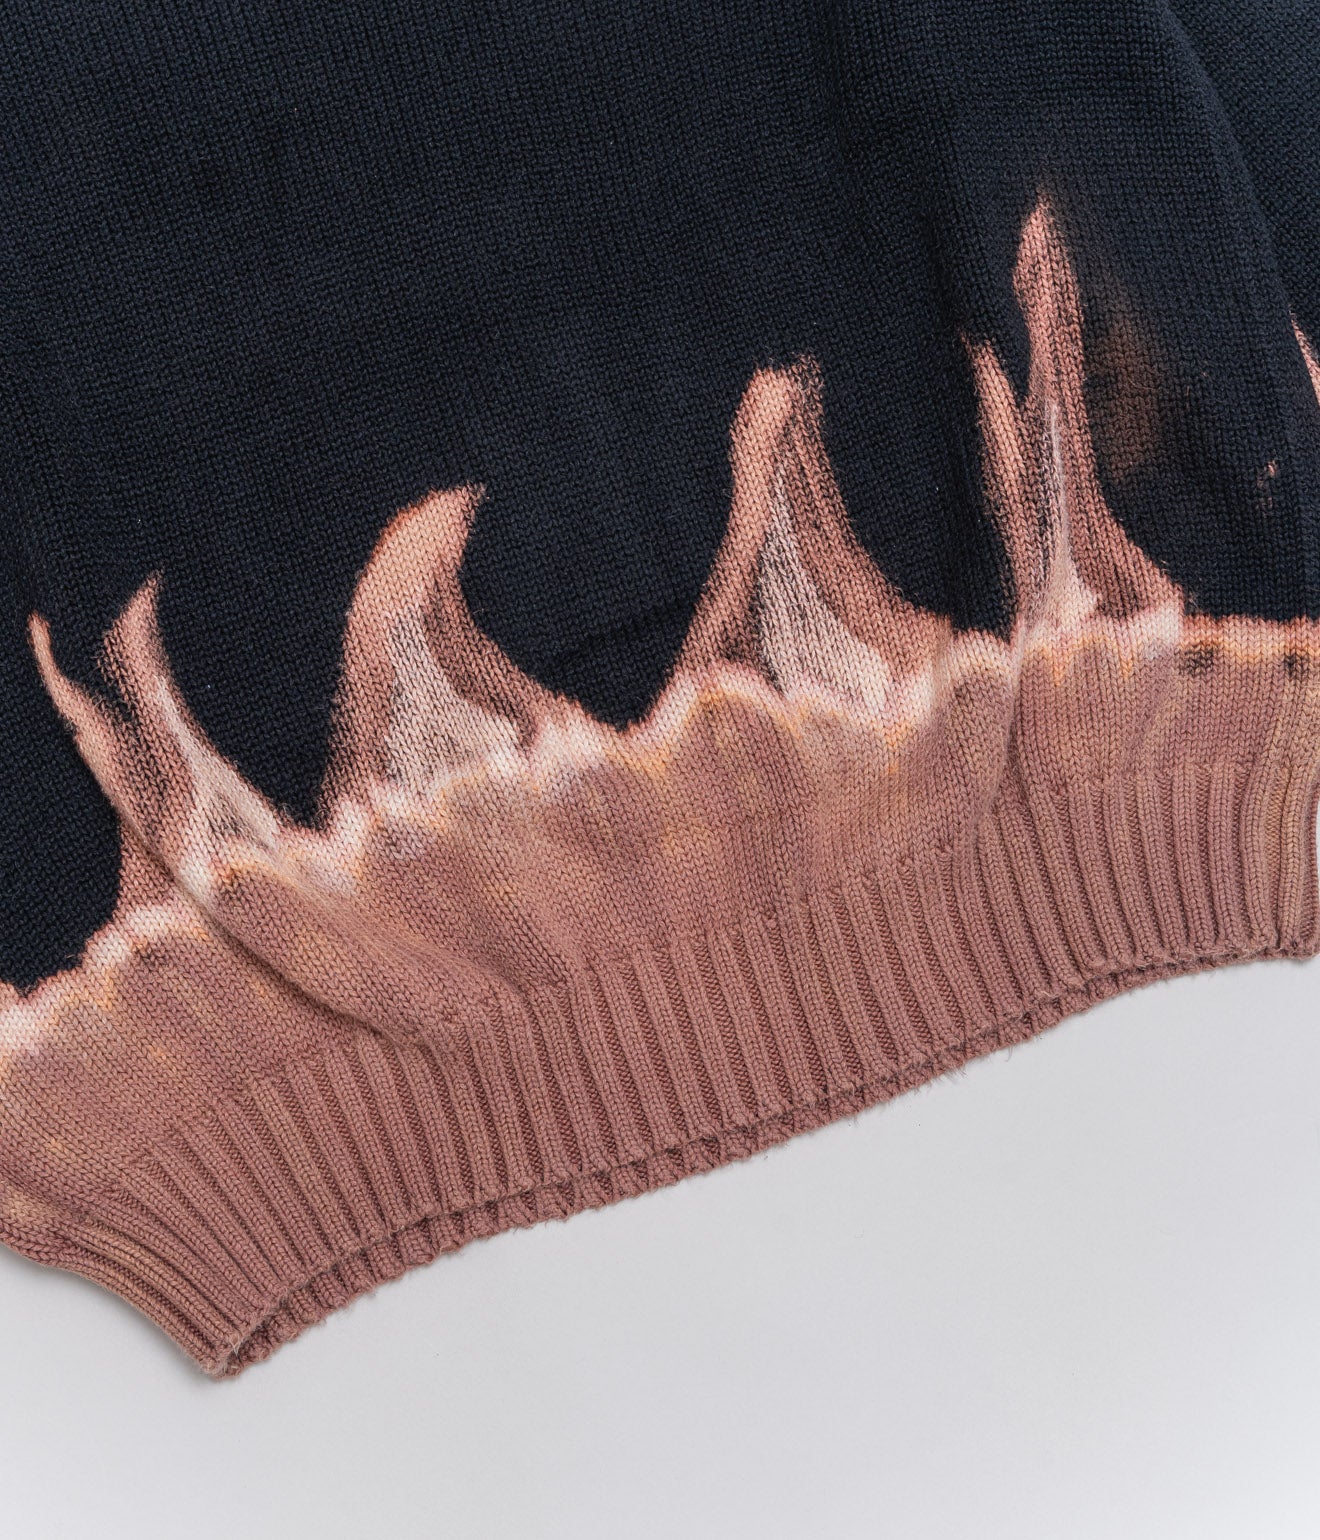 r "Tie-dye cotton sweater fire pattern" Black 2 - WEAREALLANIMALS